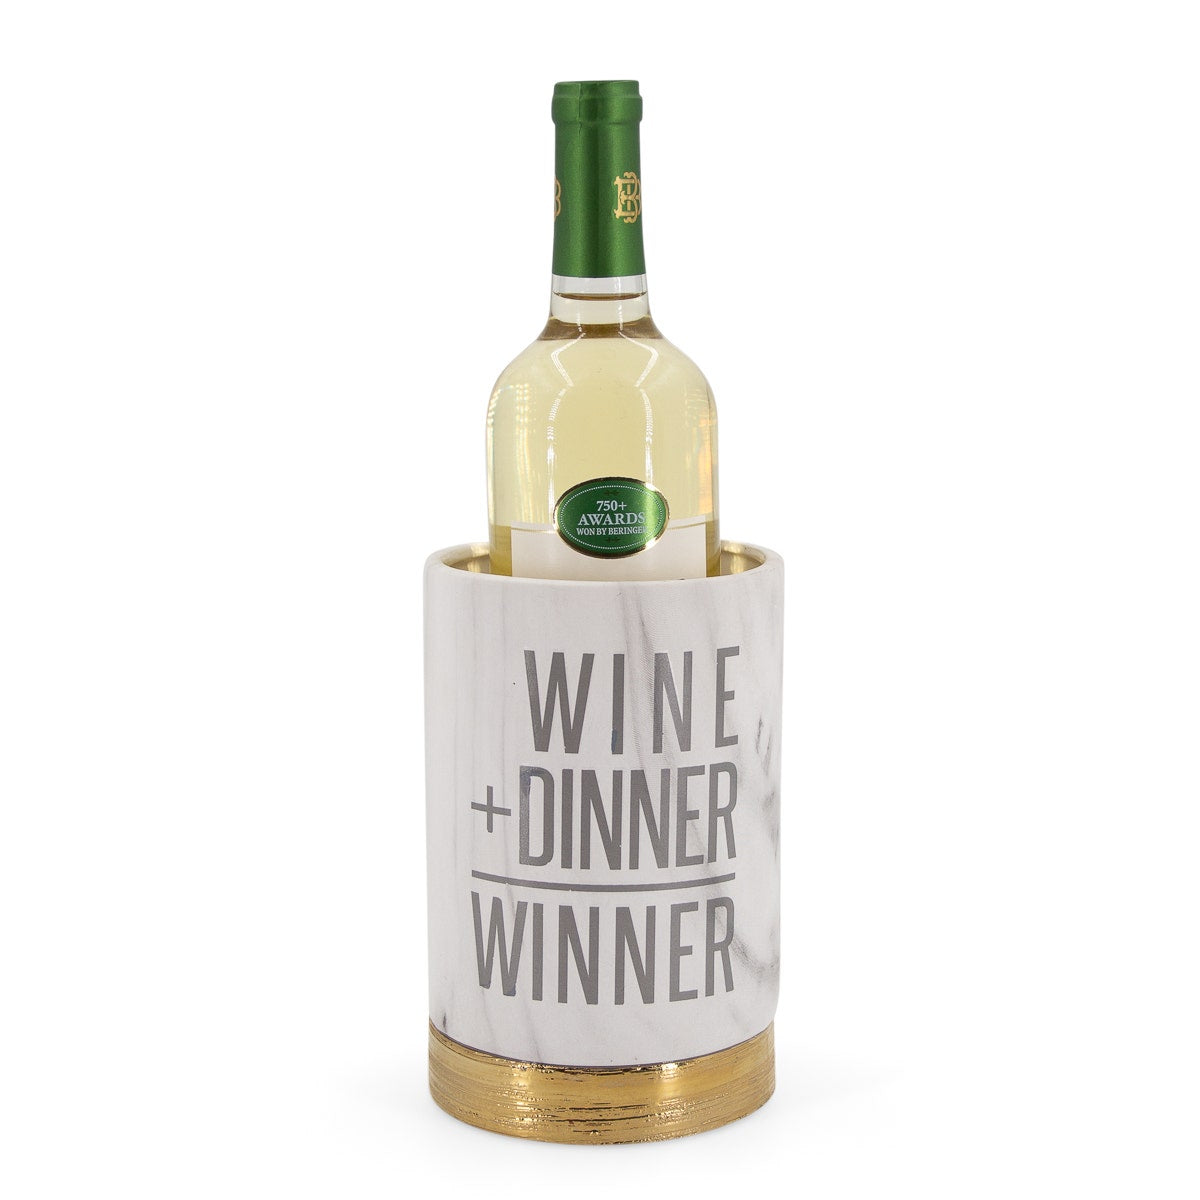 Ceramic Wine Bottle Holder – For Drinks With Dinner & More